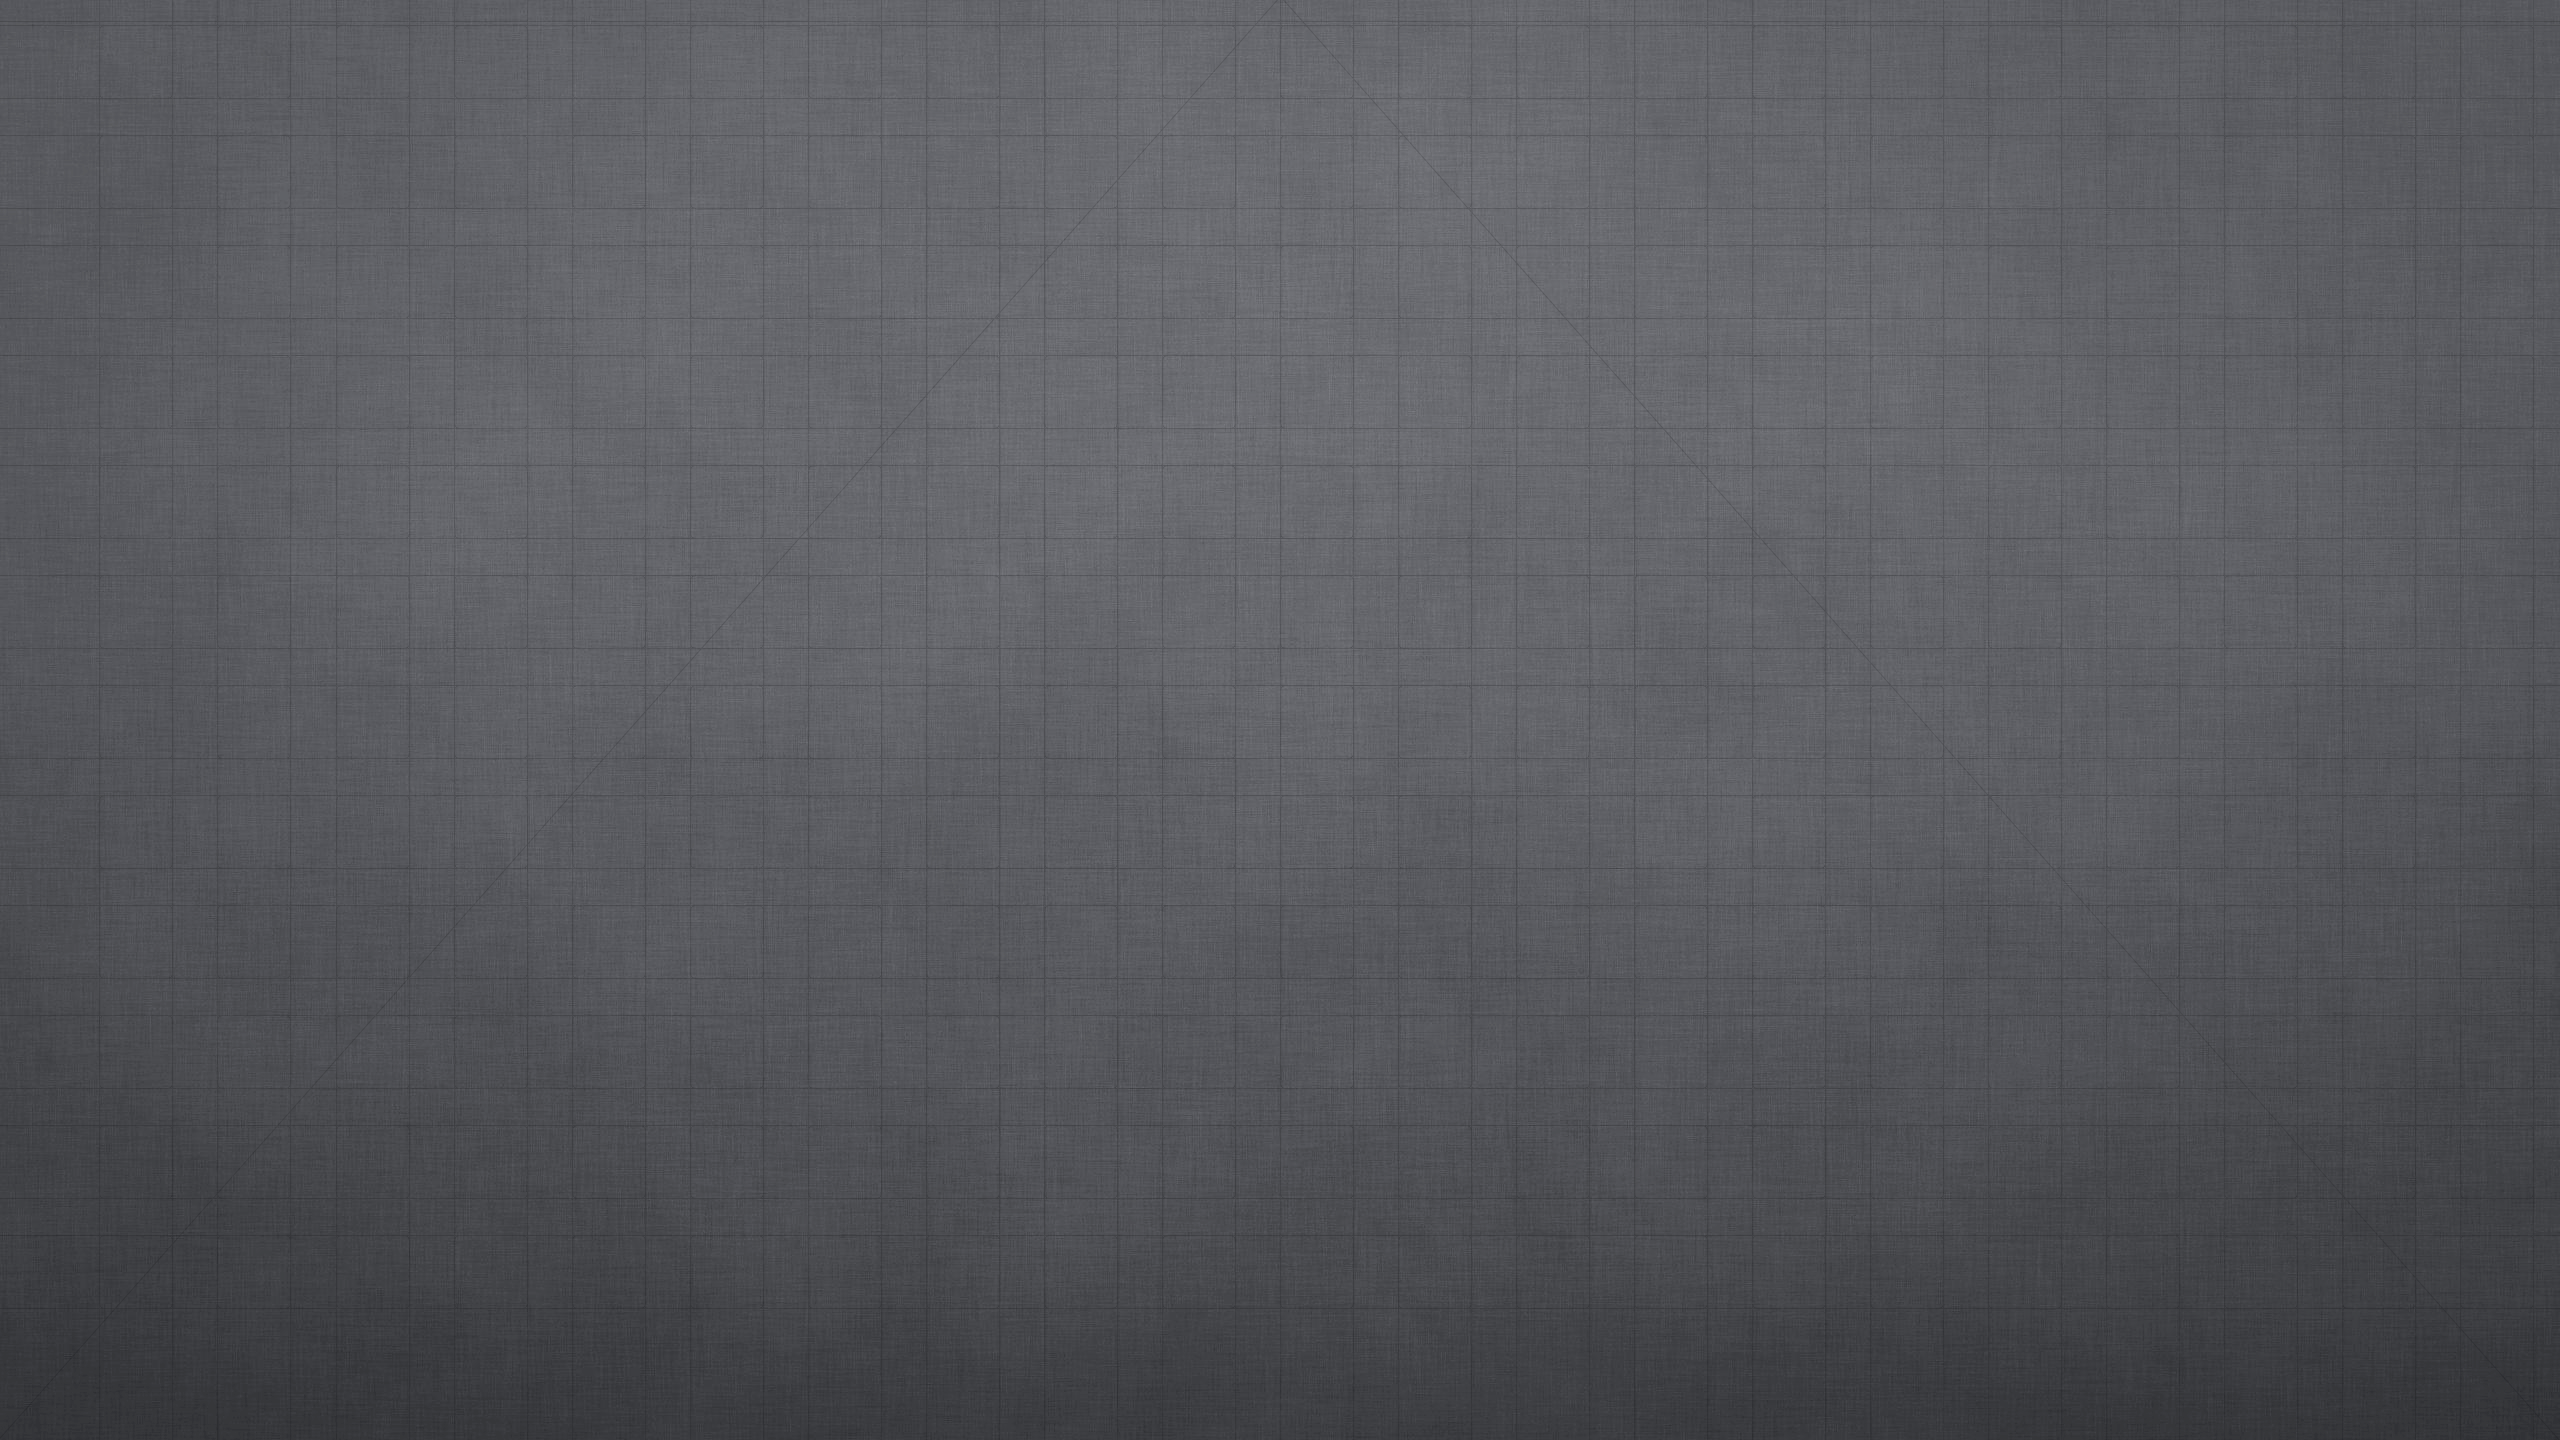 2560 X 1440 Grid Wallpaper Nickpan Com